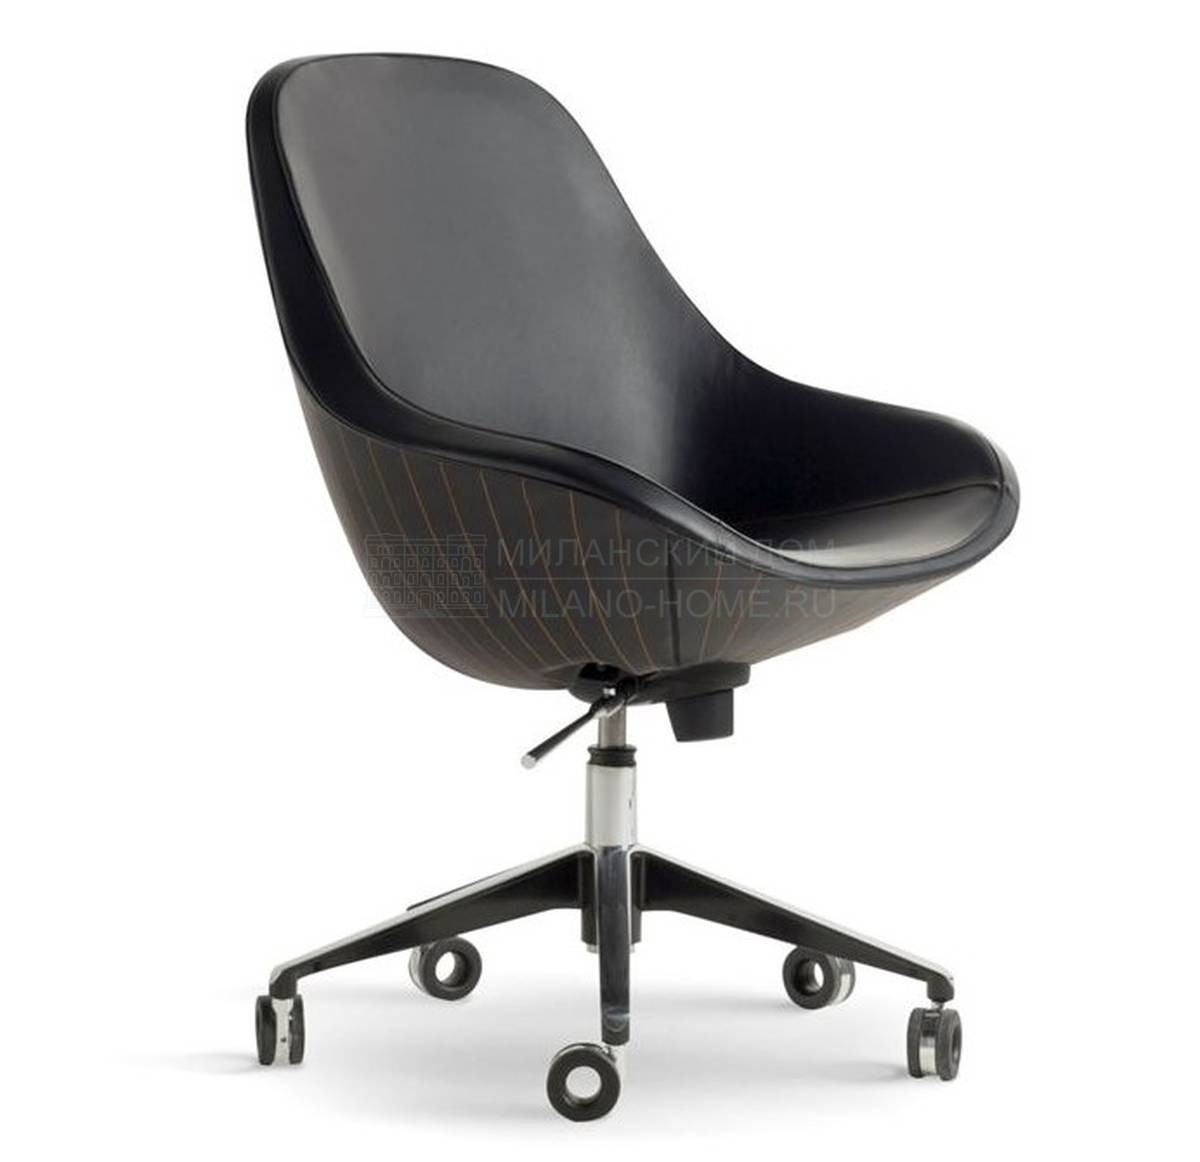 Кожаное кресло Mylord desk armchair из Франции фабрики ROCHE BOBOIS